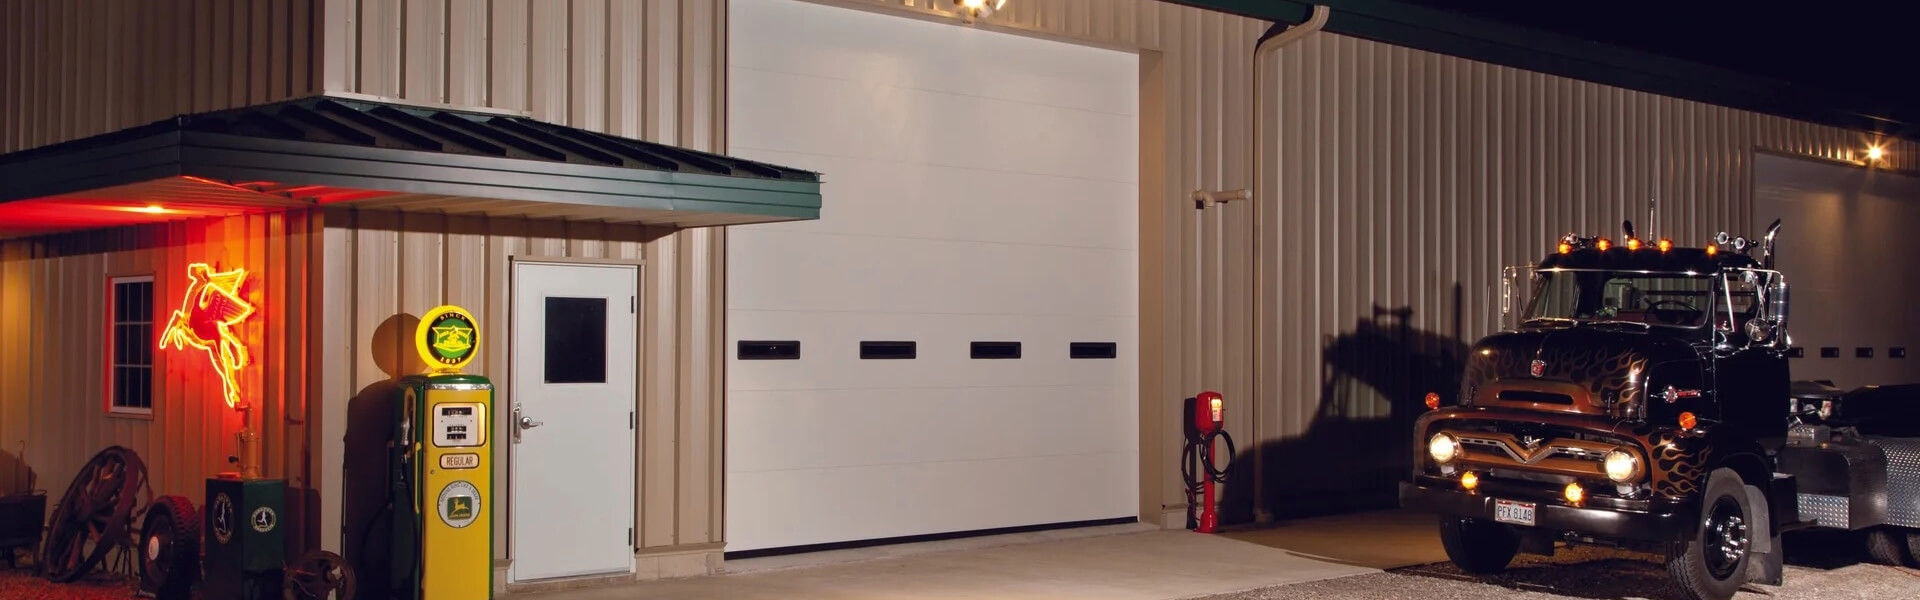 Haas 600 Series Commercial Garage Doors